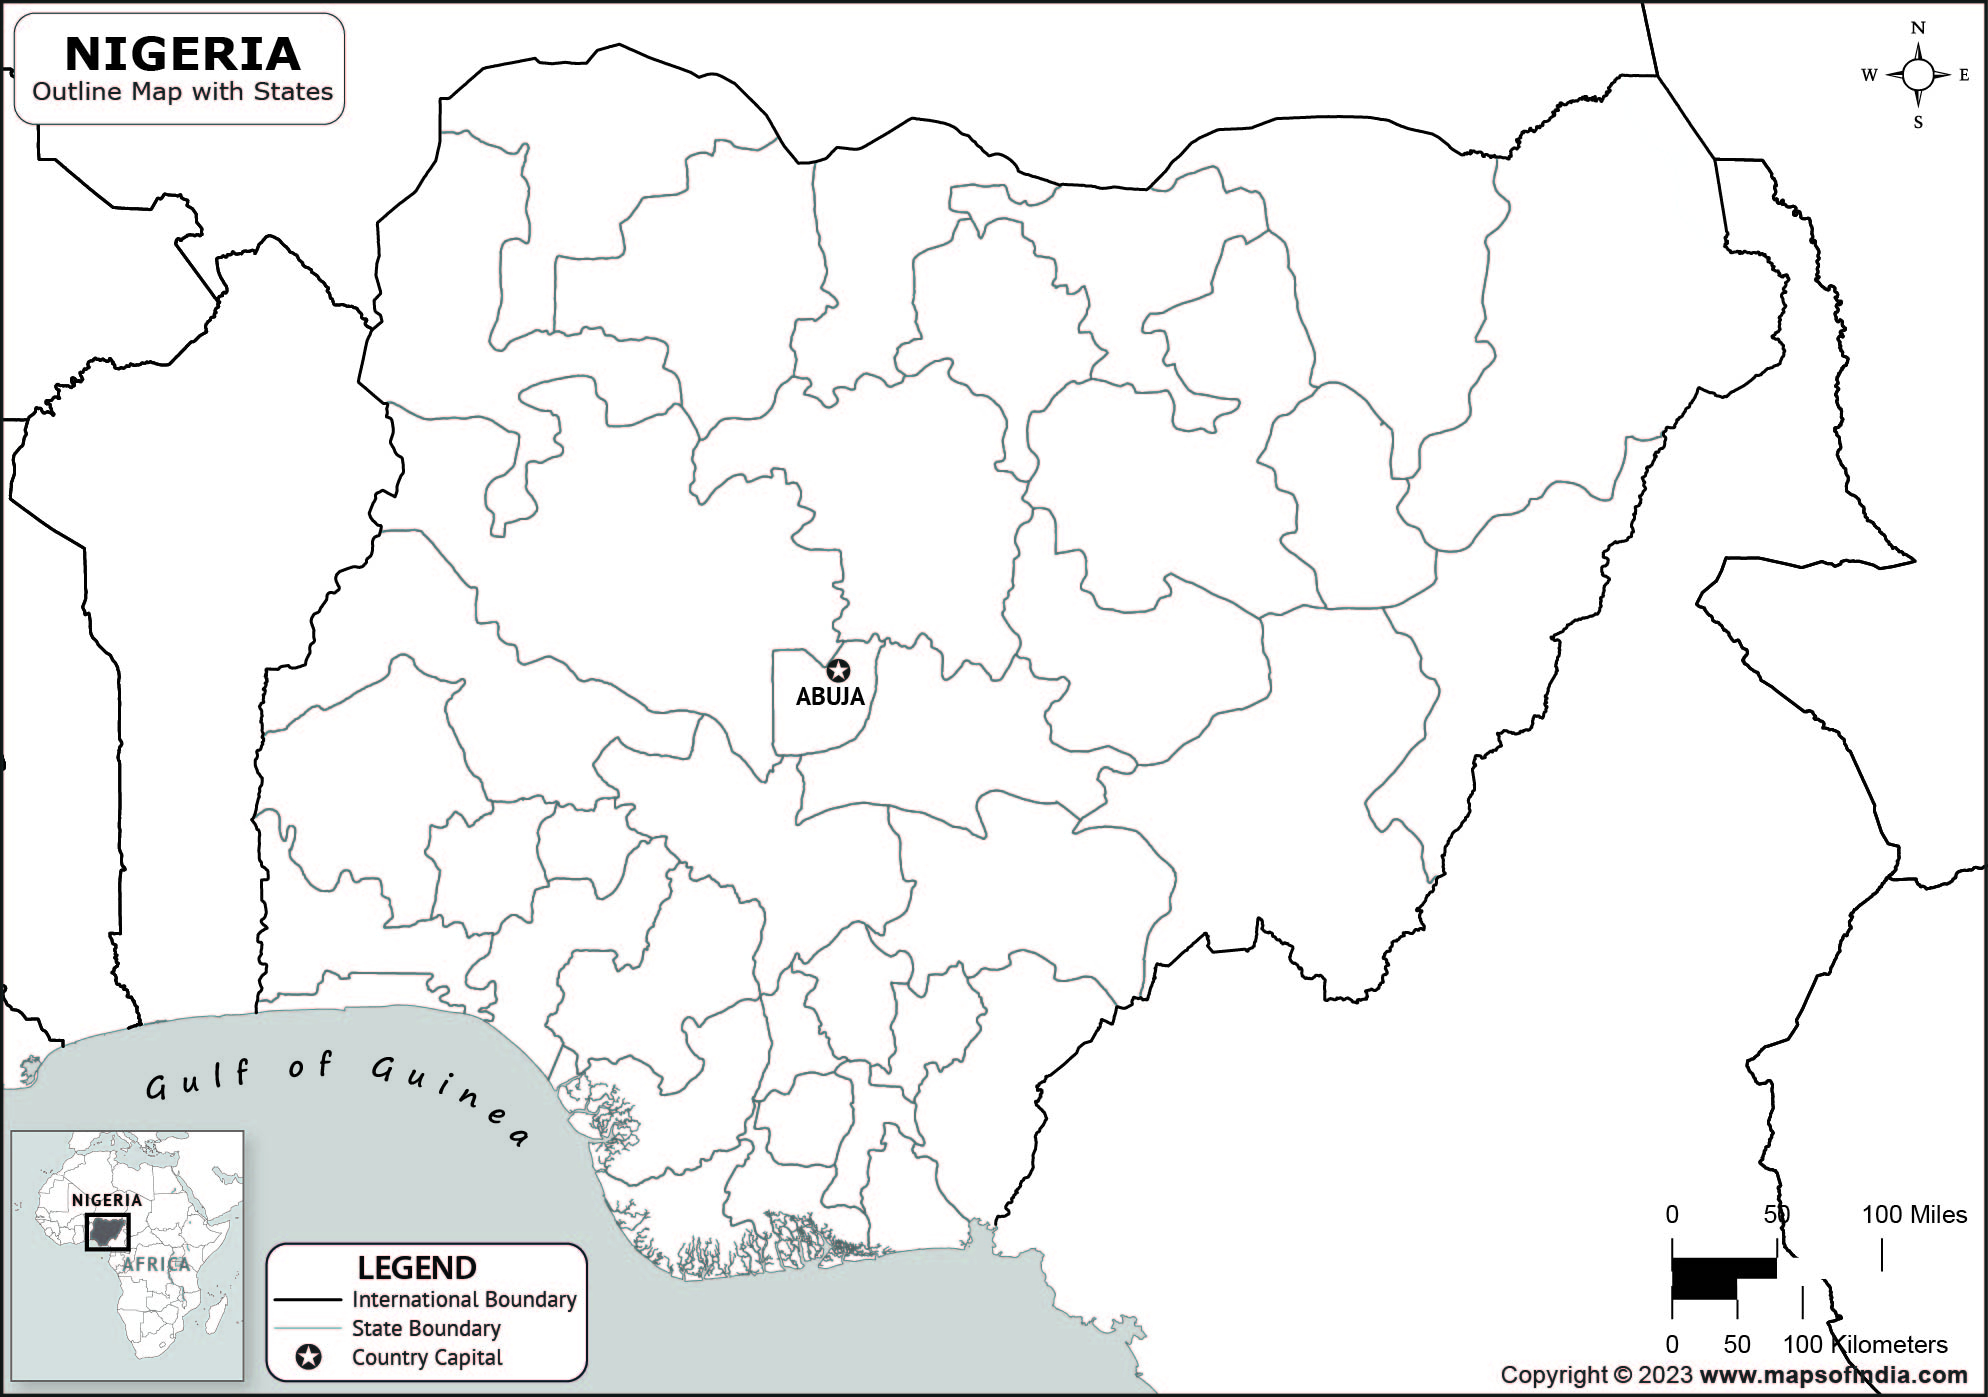 Nigeria Outline Map Nigeria Outline Map With State Boundaries